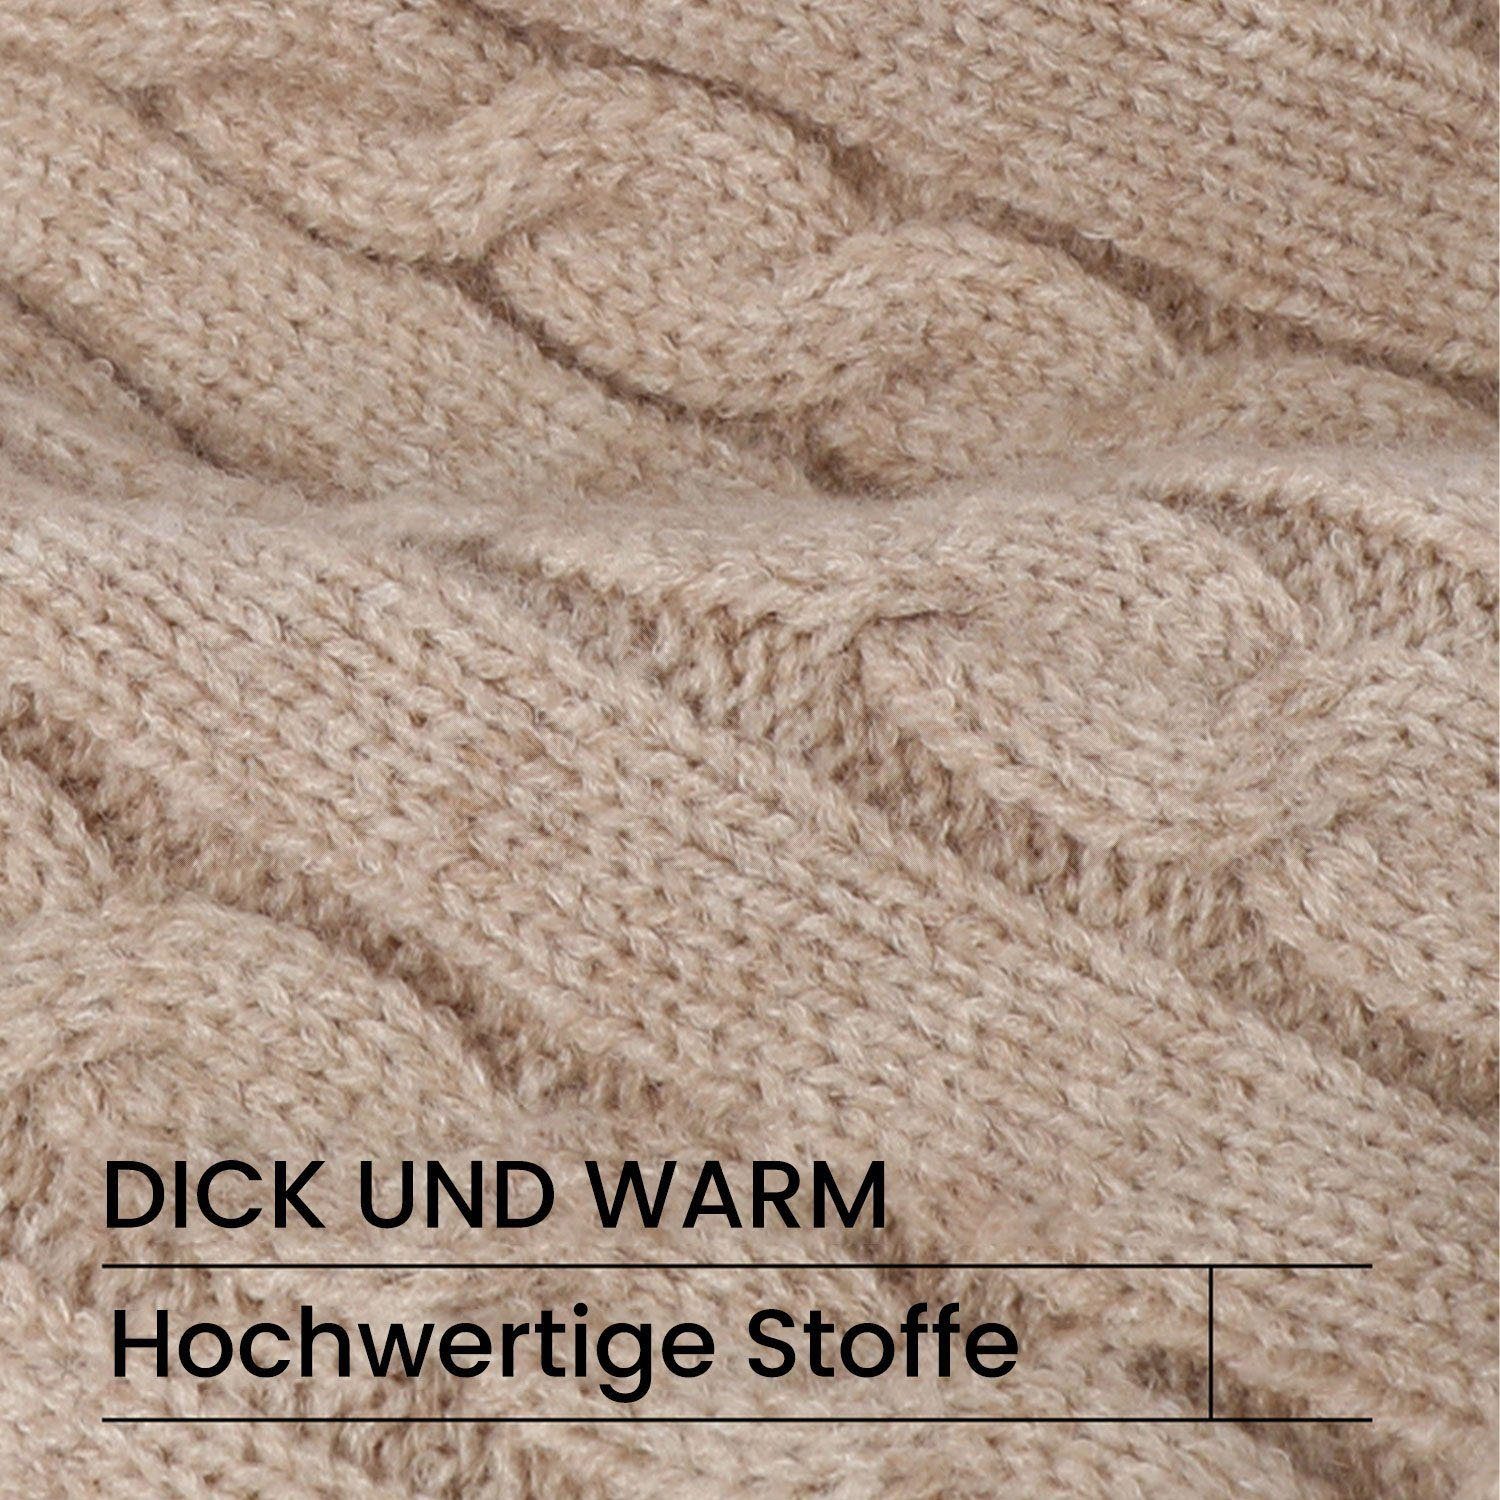 Daisred Lang Touchscreen Mütze Schal und Winter Set Schal & Handschuhe Khaki Mütze